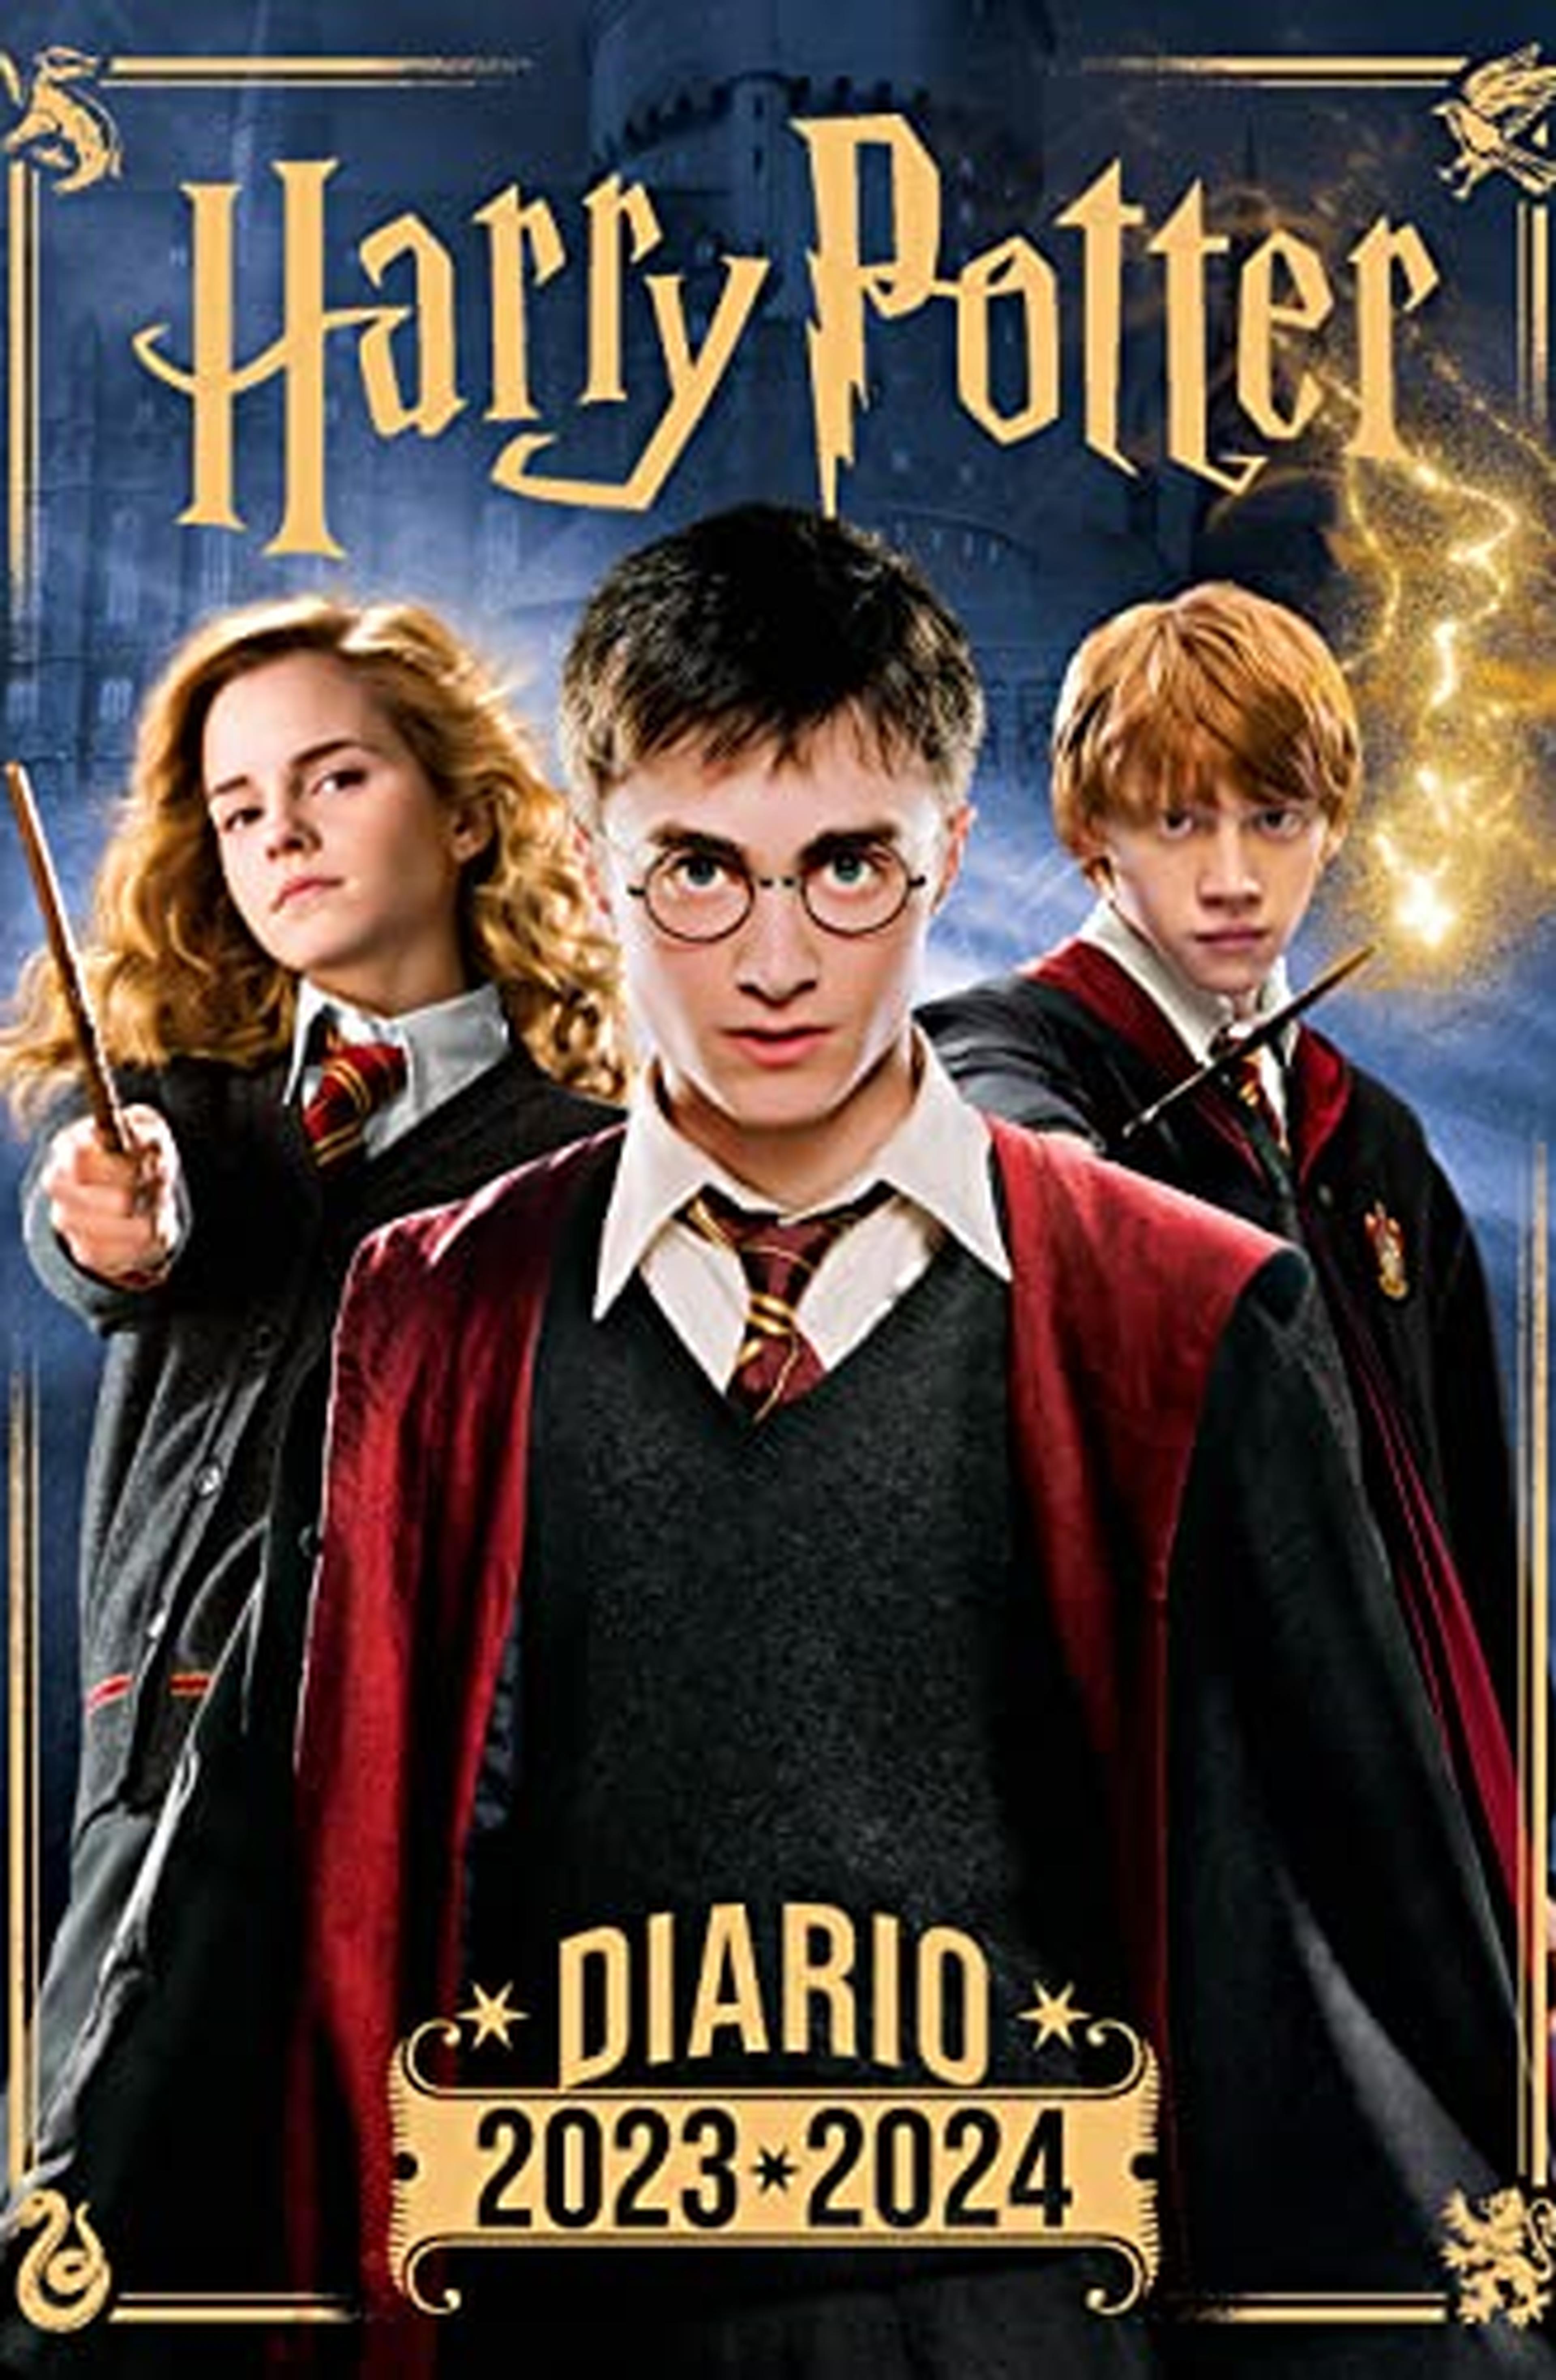 Diario di Harry Potter 2023-2024. Agenda scolastica giornaliera. Prodotto ufficiale